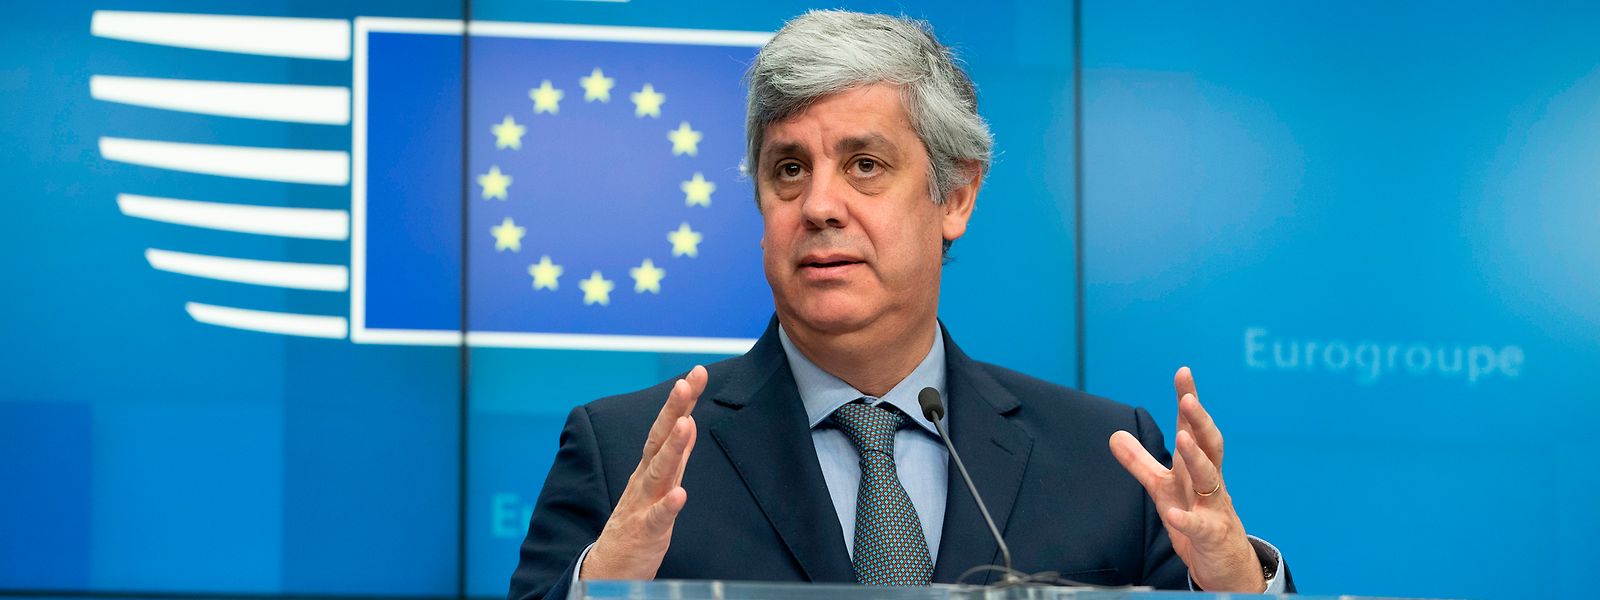 Mario Centeno, portugiesischer Finanzminister, ist aktuell Präsident der Eurogruppe. Am Montag diskutierten die Finanzminister der Eurogruppe neue Maßnahmen, um die Wirtschaft zu stützen.